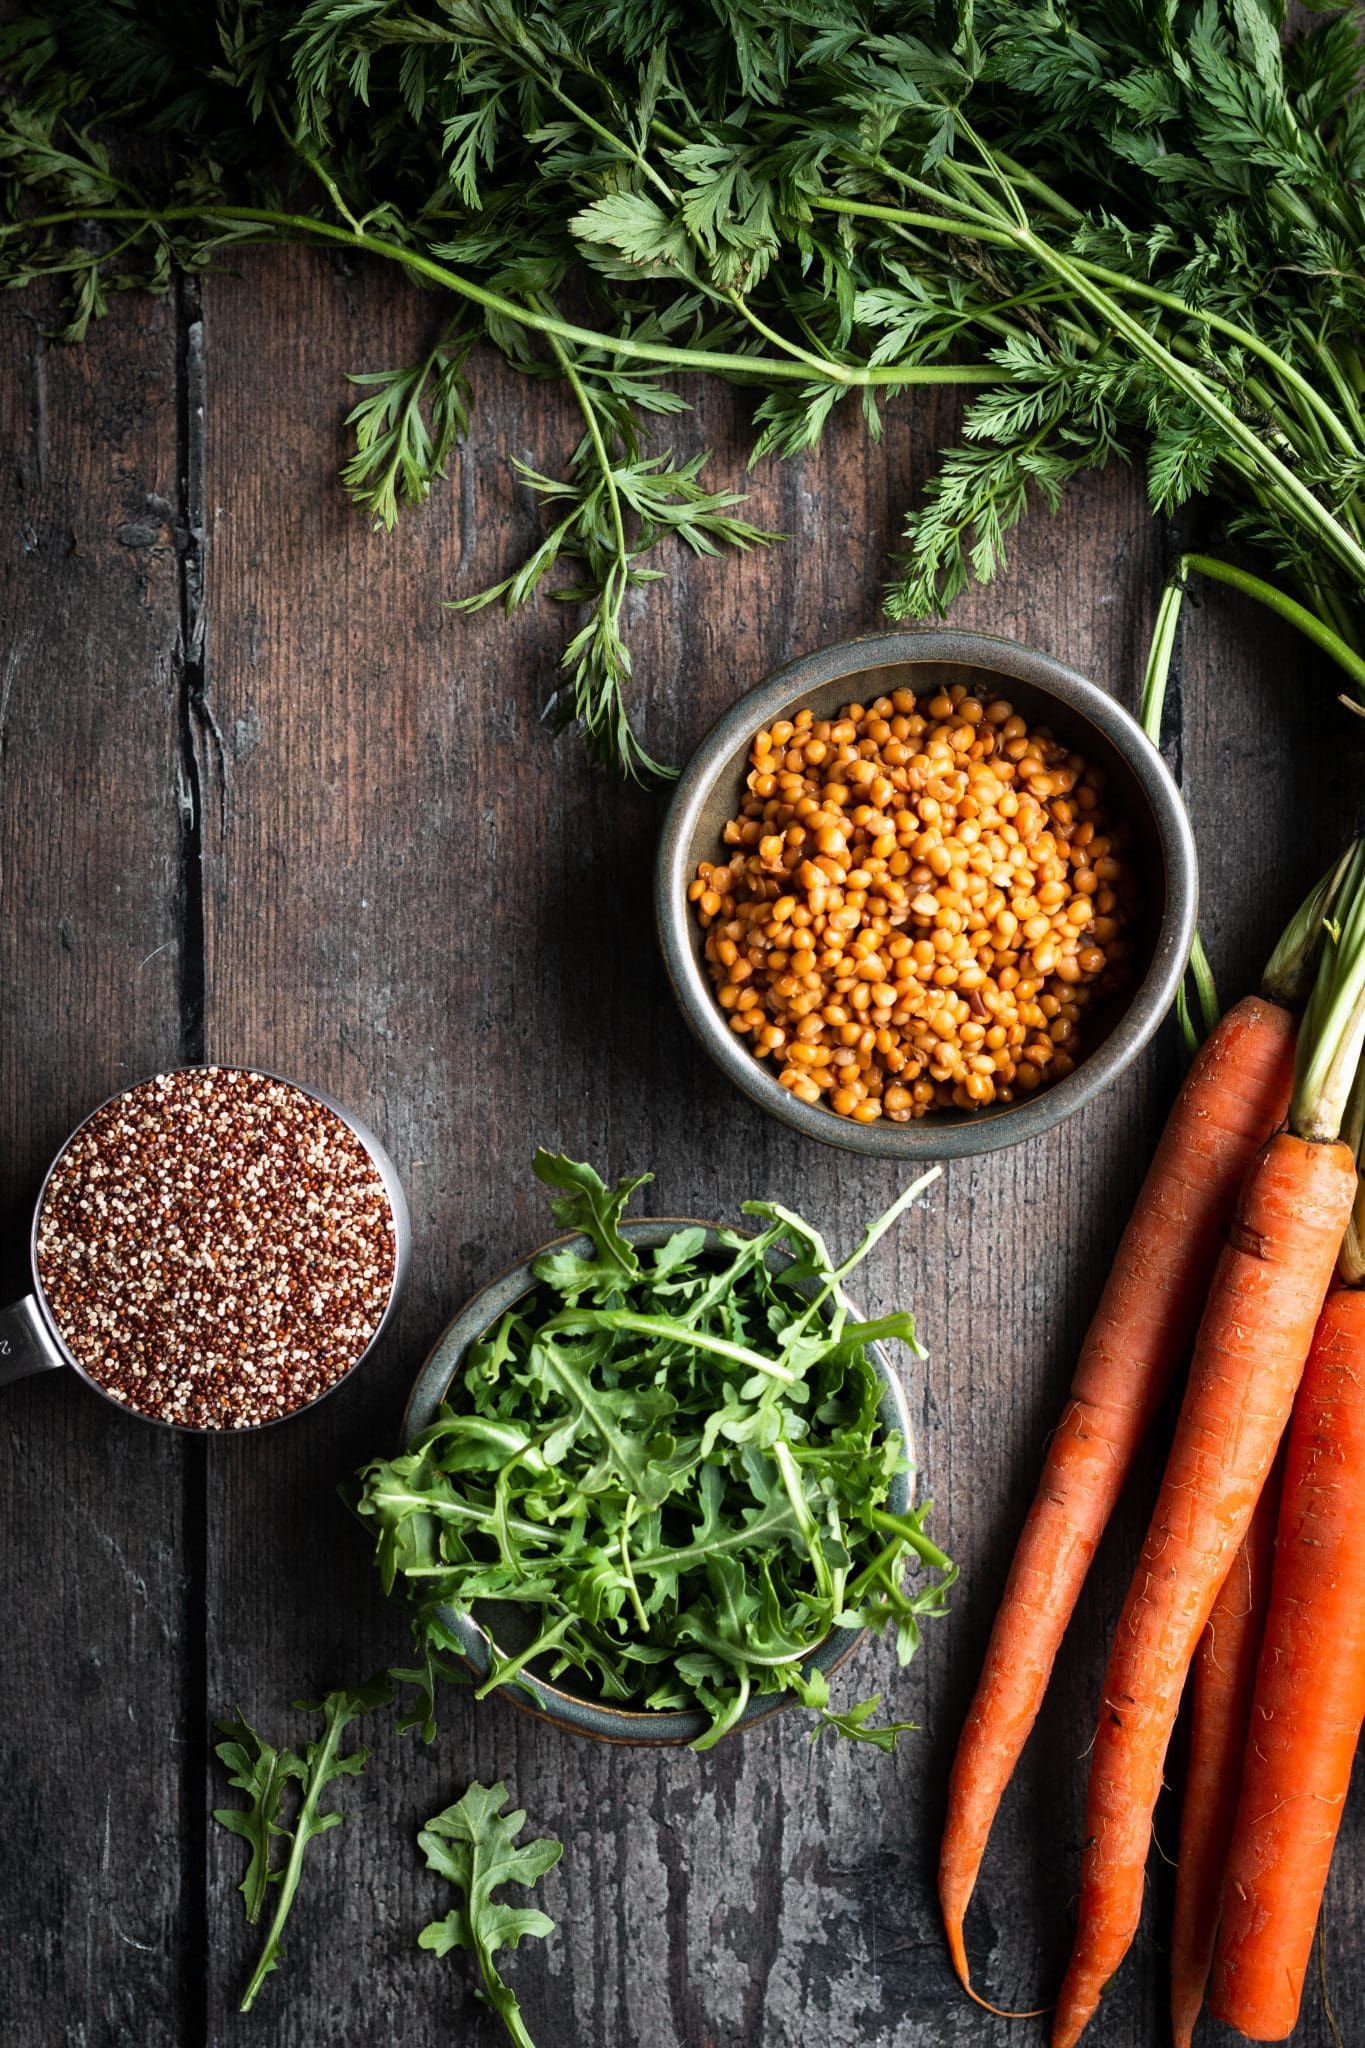 carrots, lentils, quinoa and arugula on a table